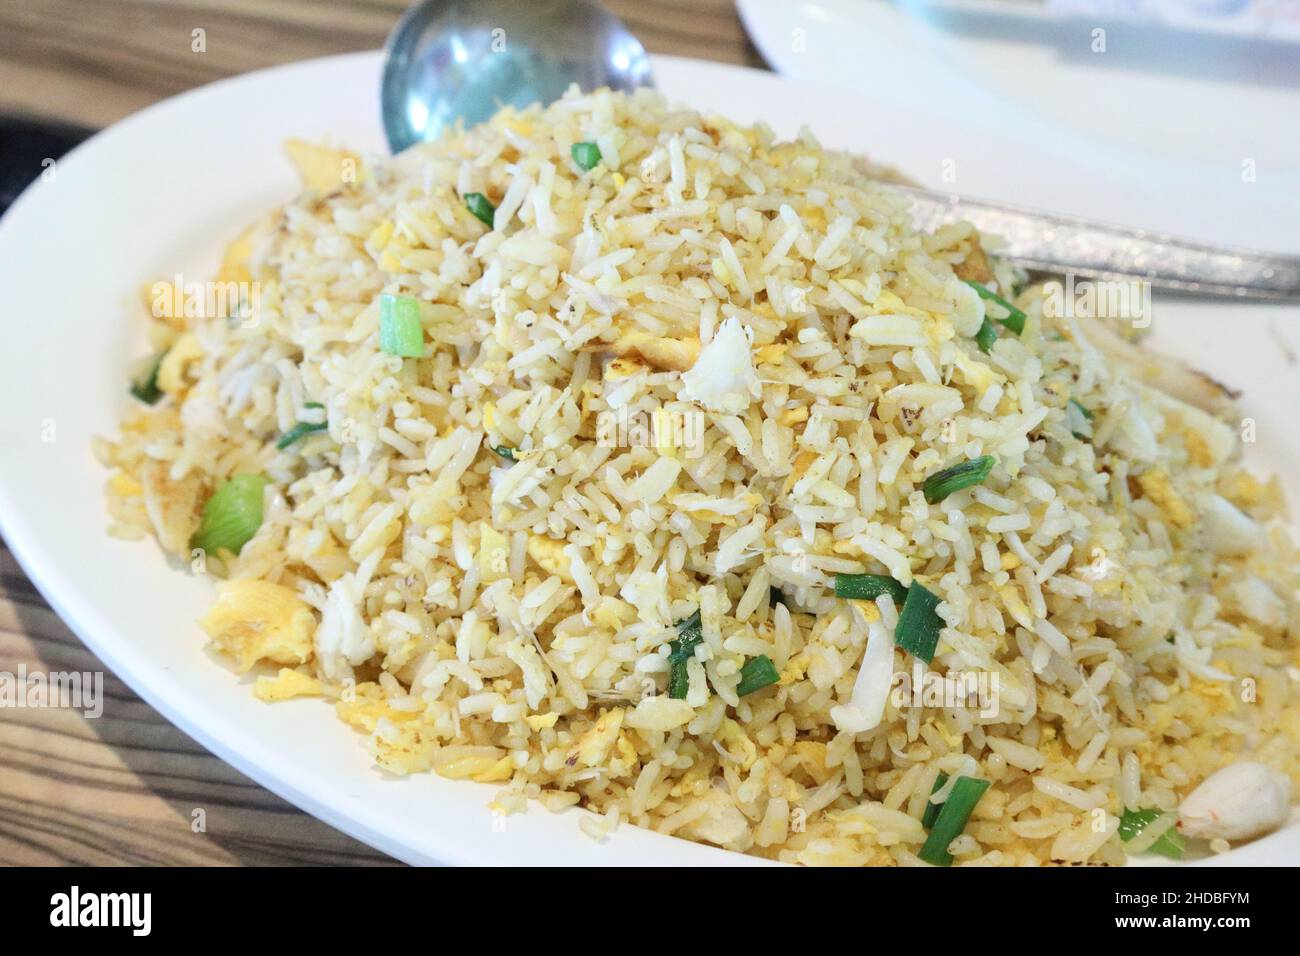 Das asiatische Essen namens Krabben gebraten serviert in der großen Gericht für vier bis fünf Personen. Stockfoto